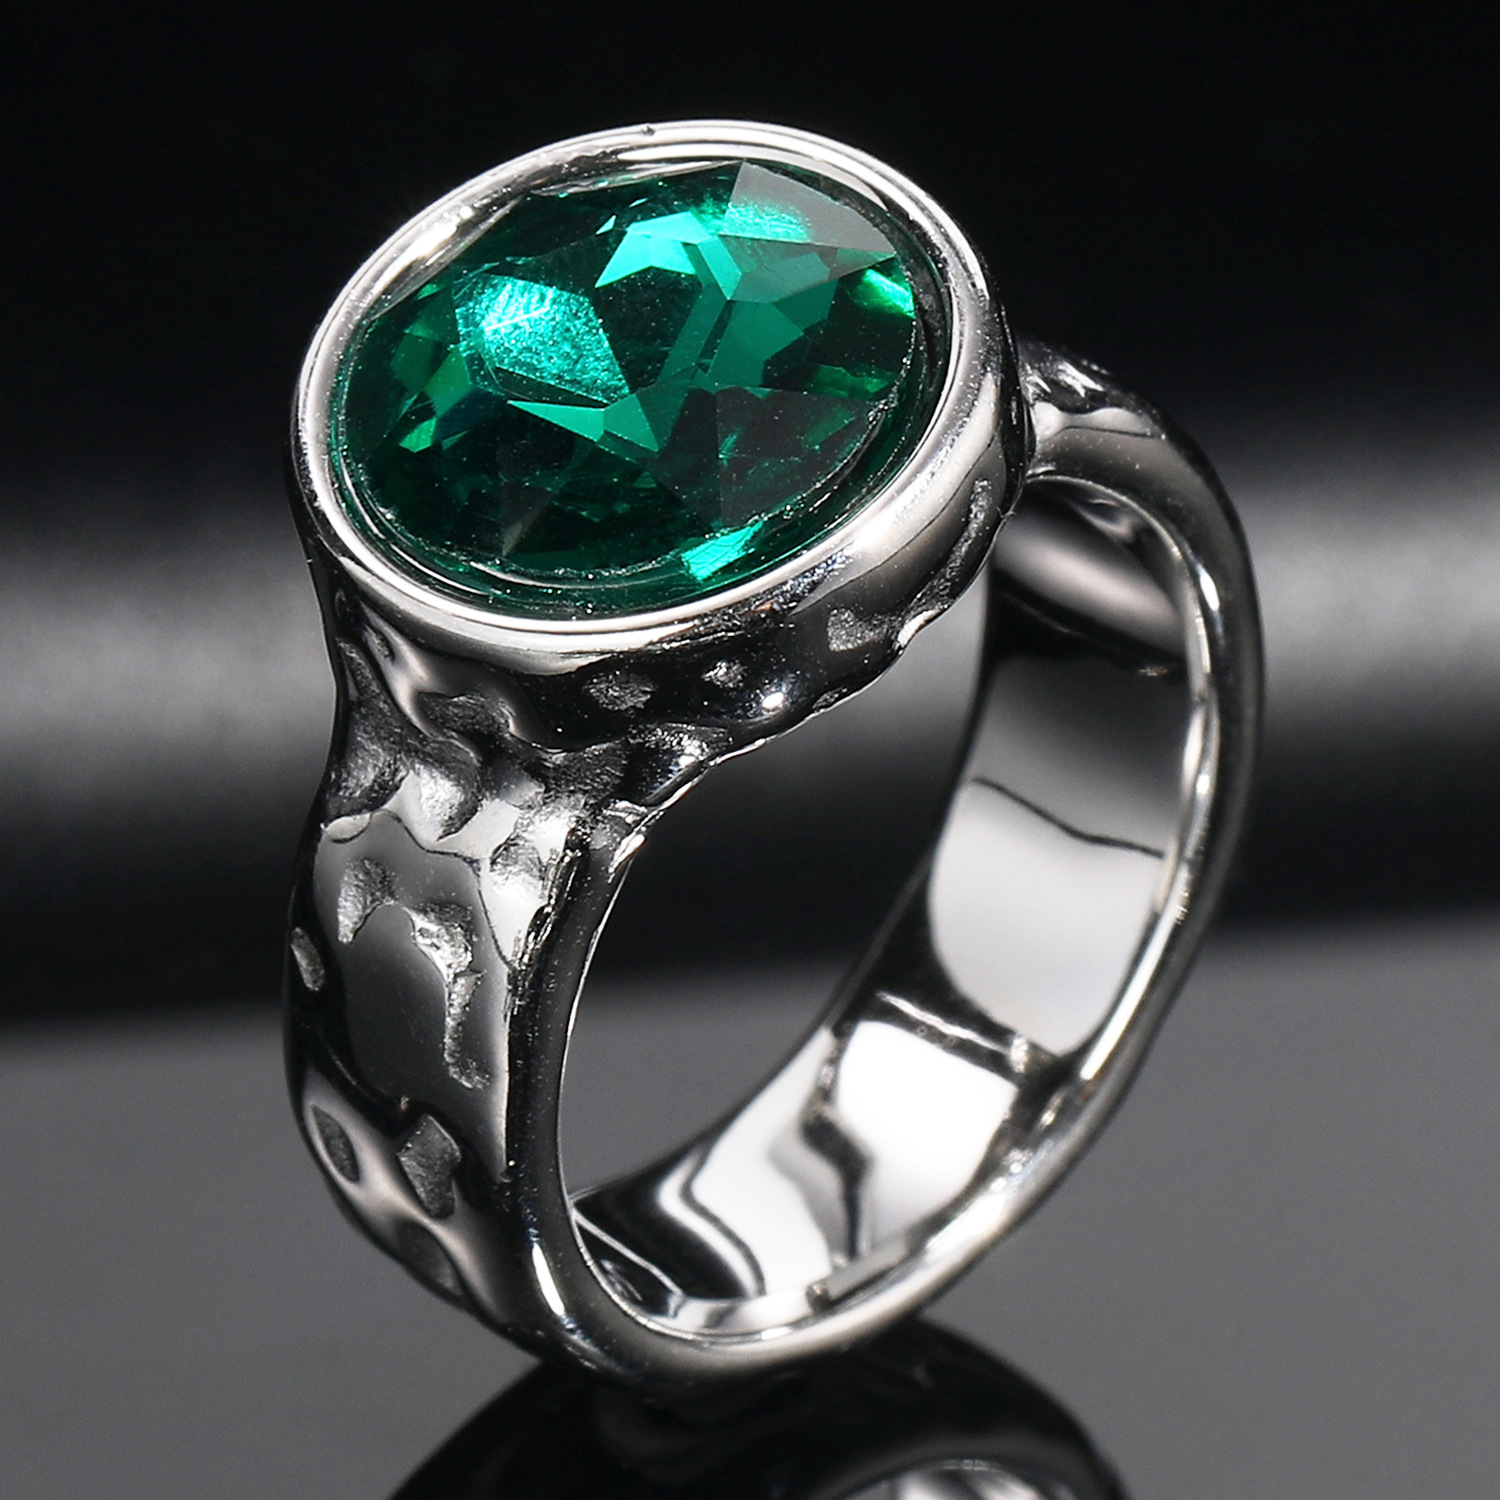 Steel emerald